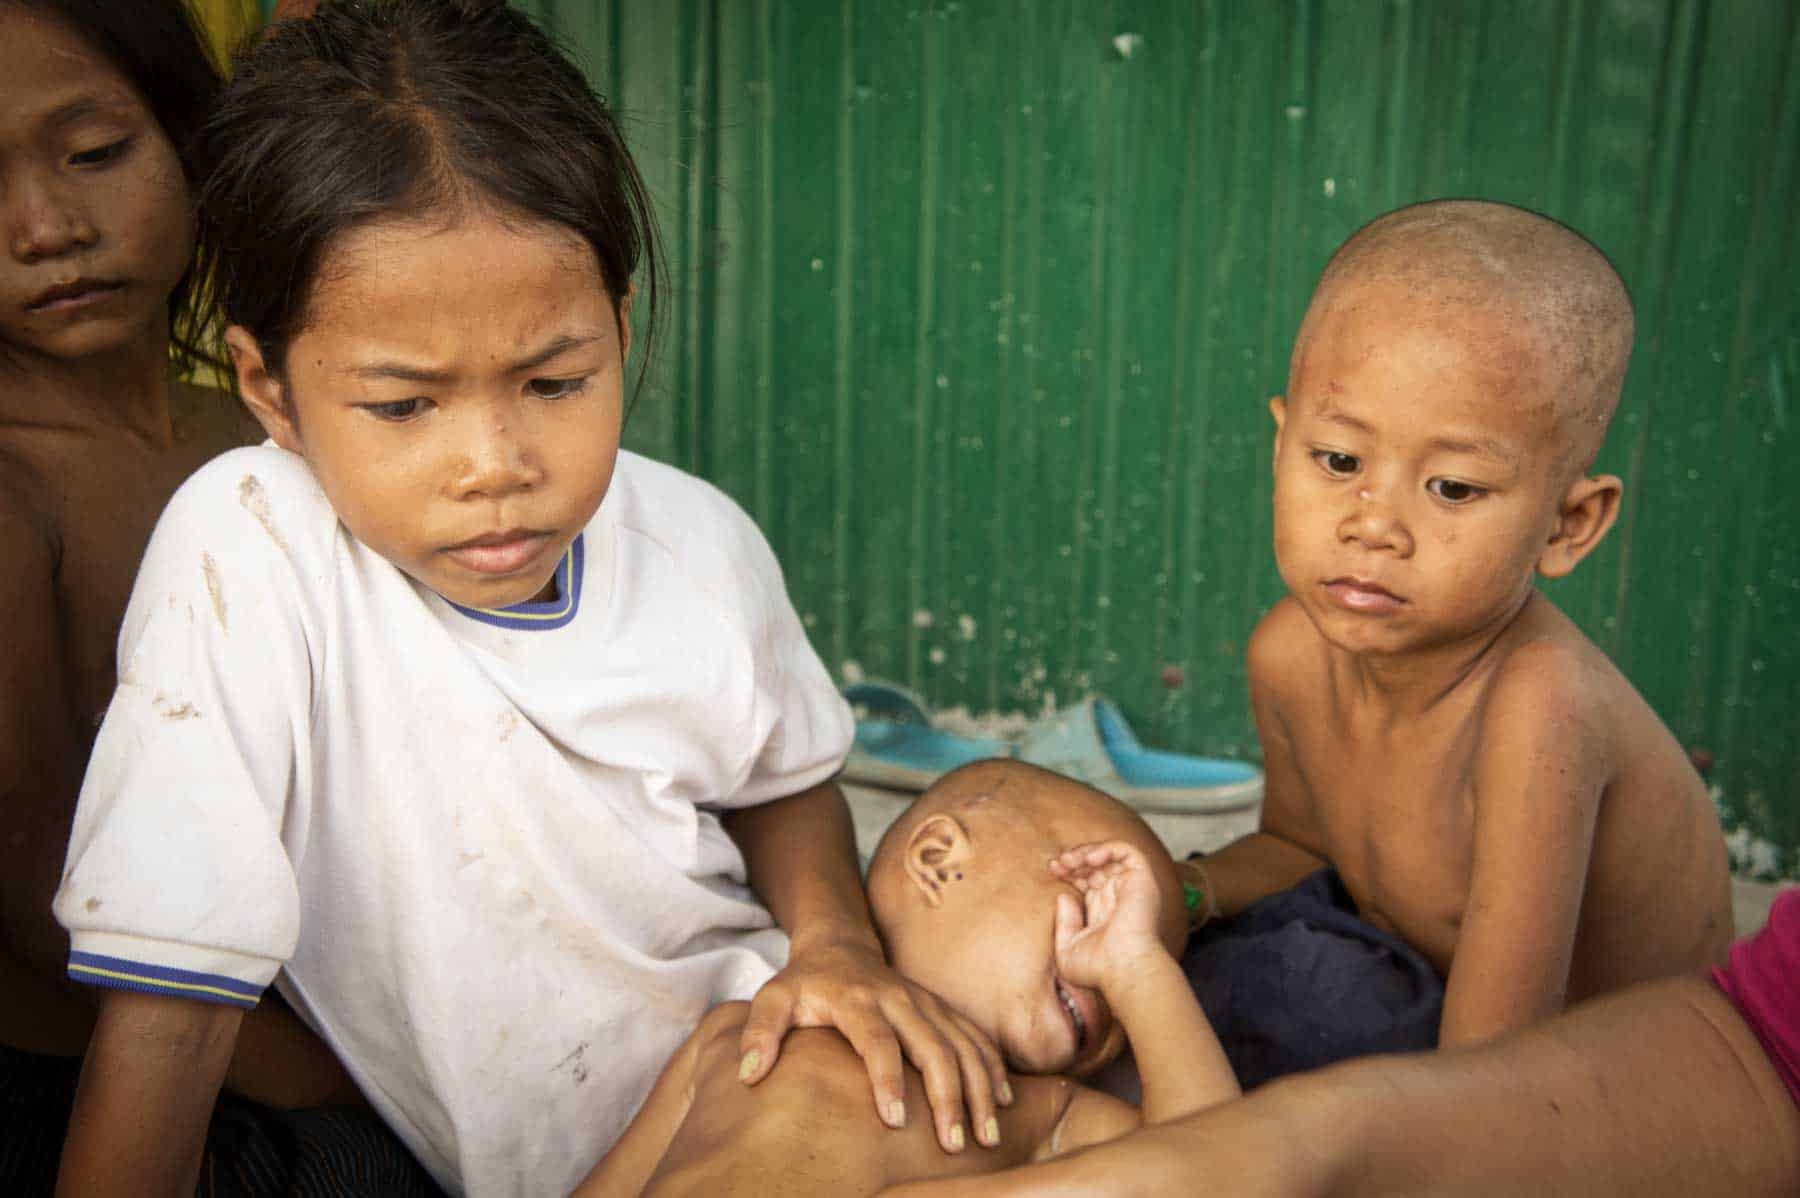 Localisation et intervention humanitaire dans un village au Cambodge pour des enfants pauvres souffrant de maltraitance, d’abus sexuel ou abandonnés par leurs parents et confié à des personnes du village.